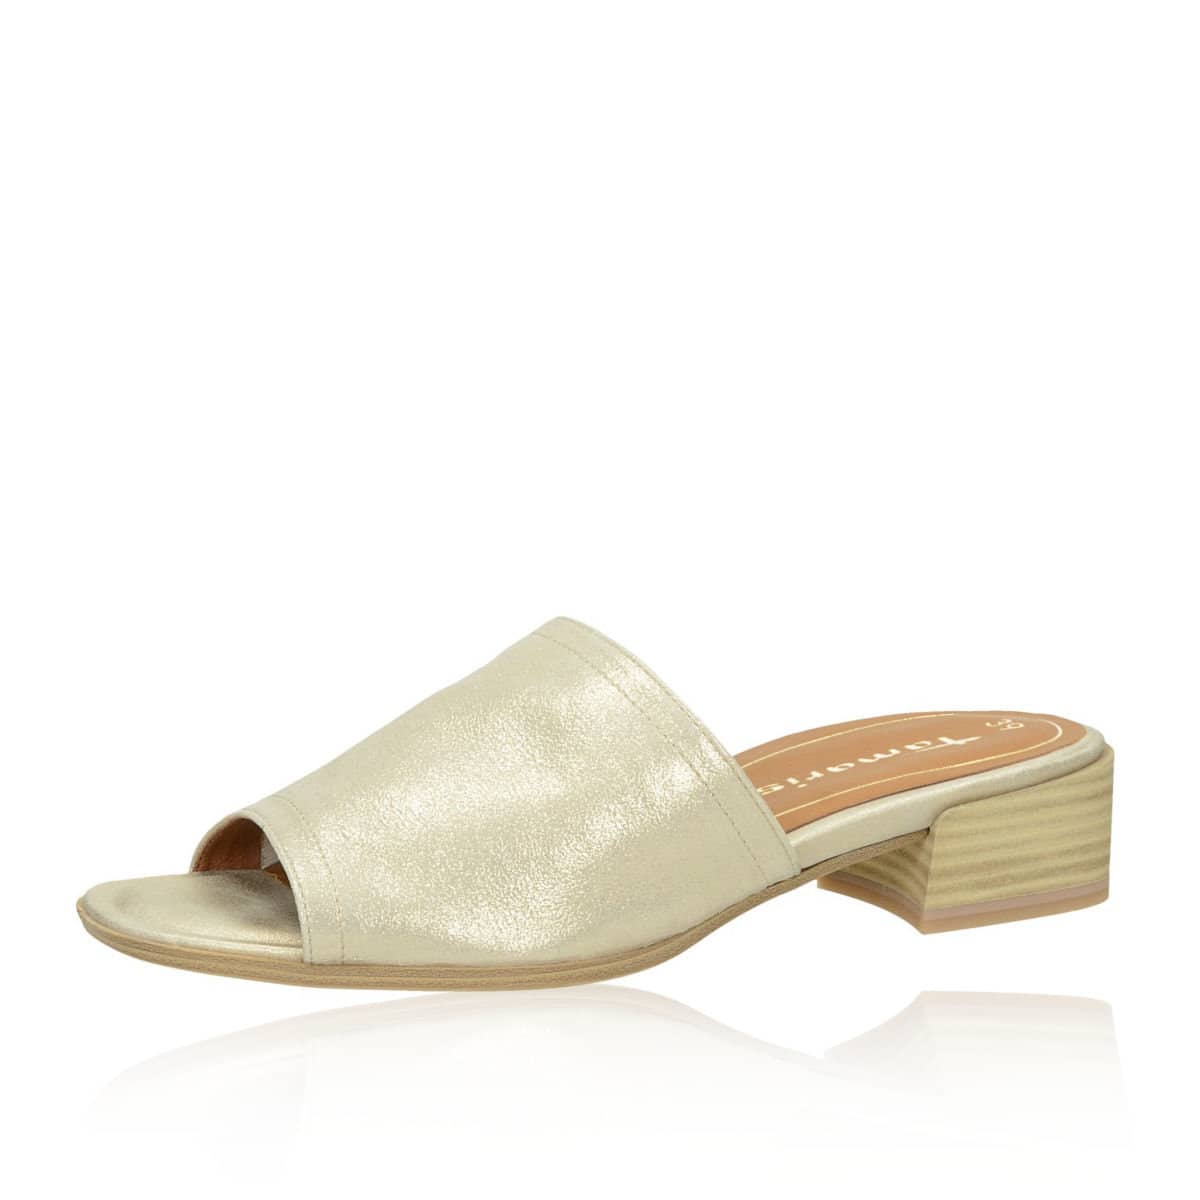 Krachtig Reparatie mogelijk Regulatie Tamaris women´s comfy heeled slippers - gold | Robel.shoes